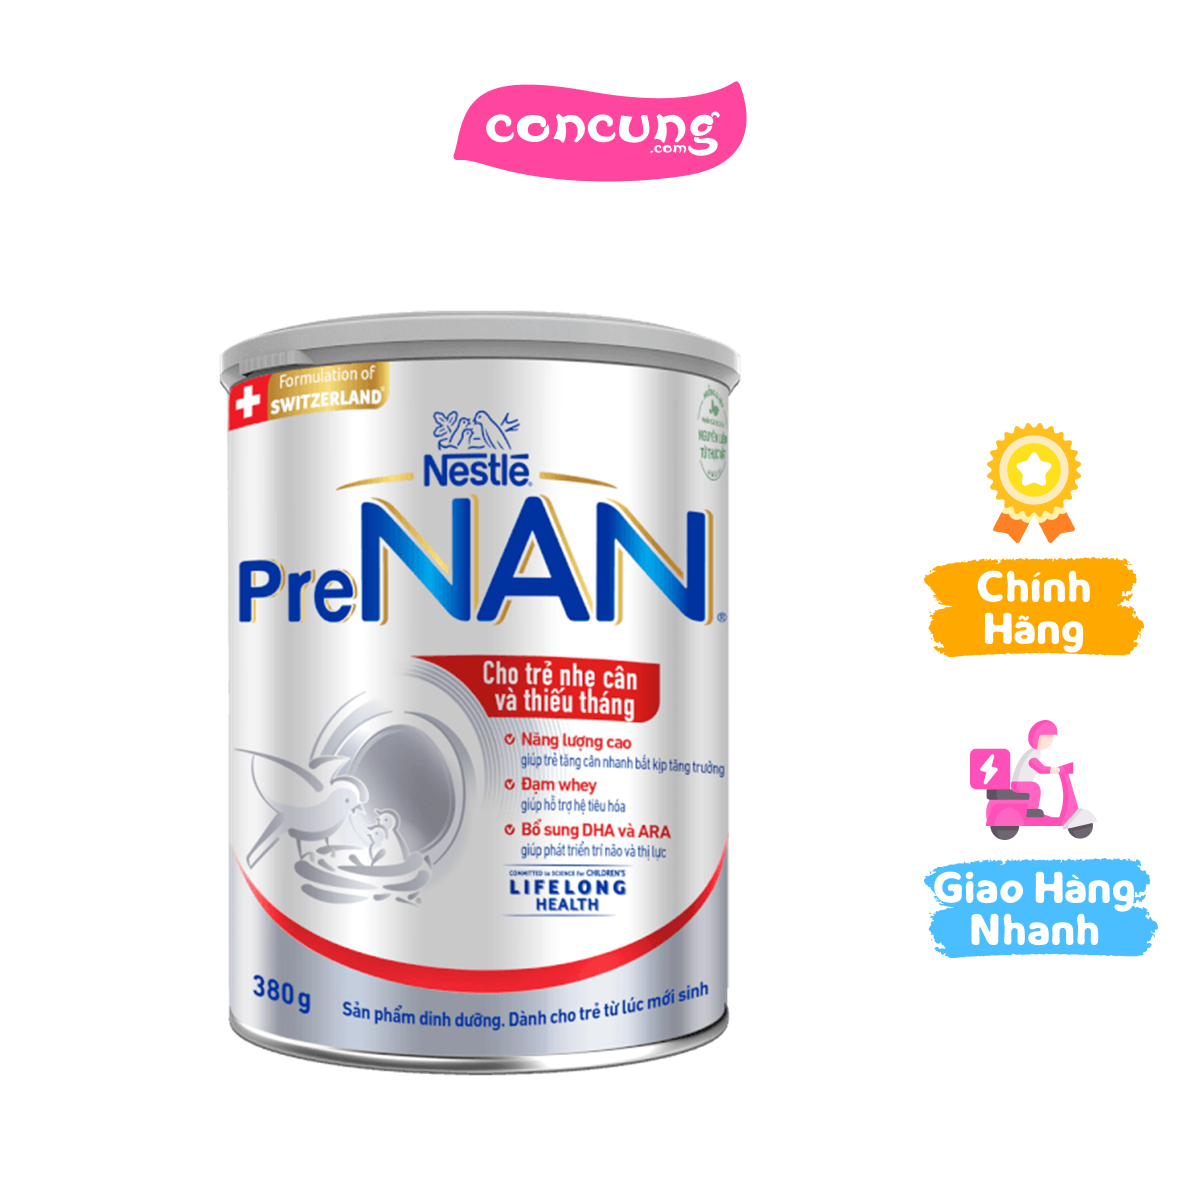 Sản phẩm dinh dưỡng Nestle PRENAN 380g